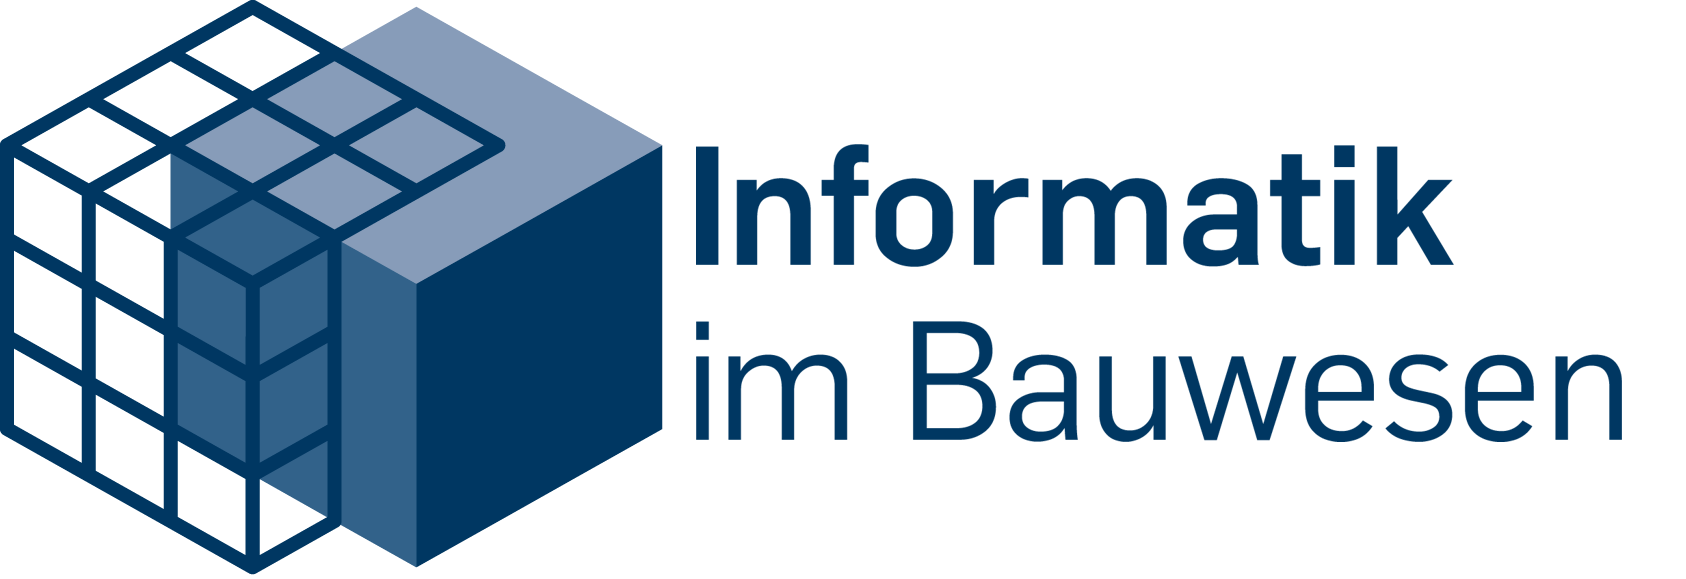 IIB-Logo